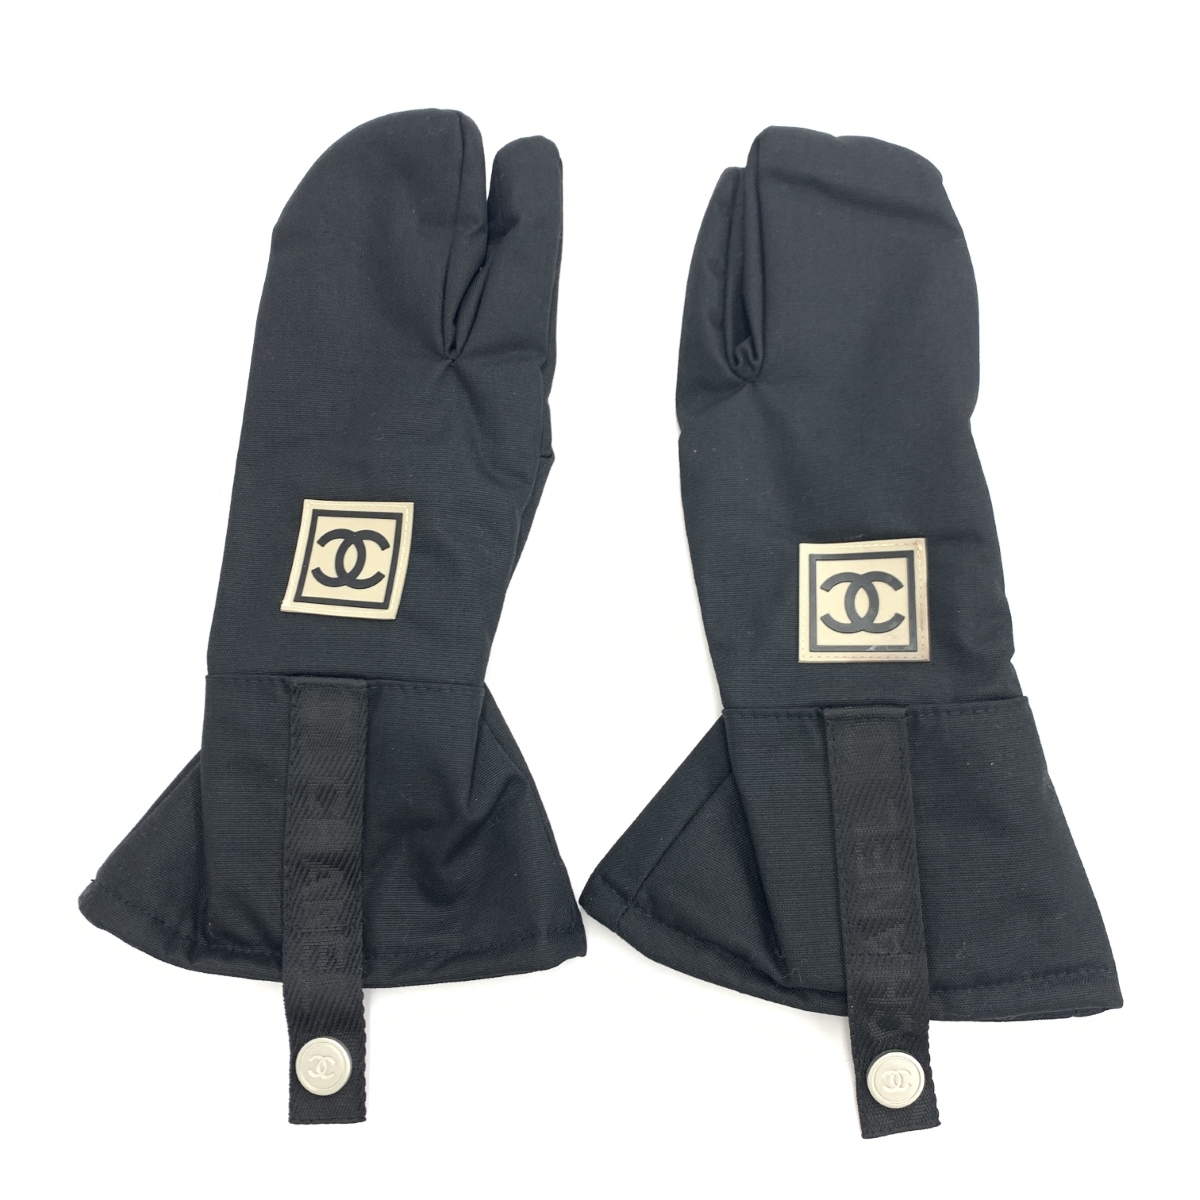 ◆CHANEL シャネルスポーツ グローブ ◆ ブラック ナイロン スノボ レディース 手袋 glove グローブ 服飾小物_画像2